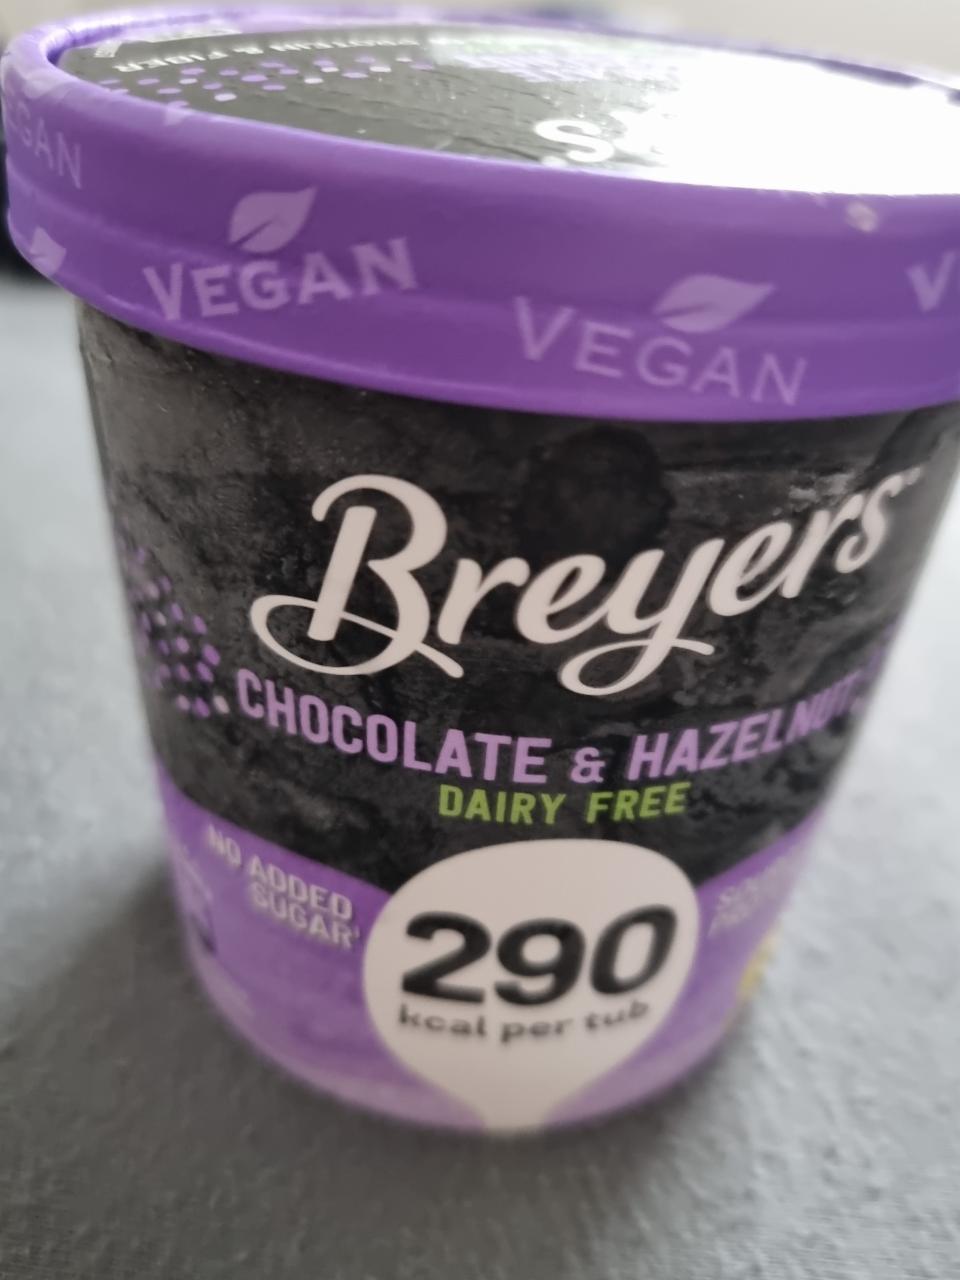 Fotografie - Breyers Chocolate & Hazelnut 290 kcal